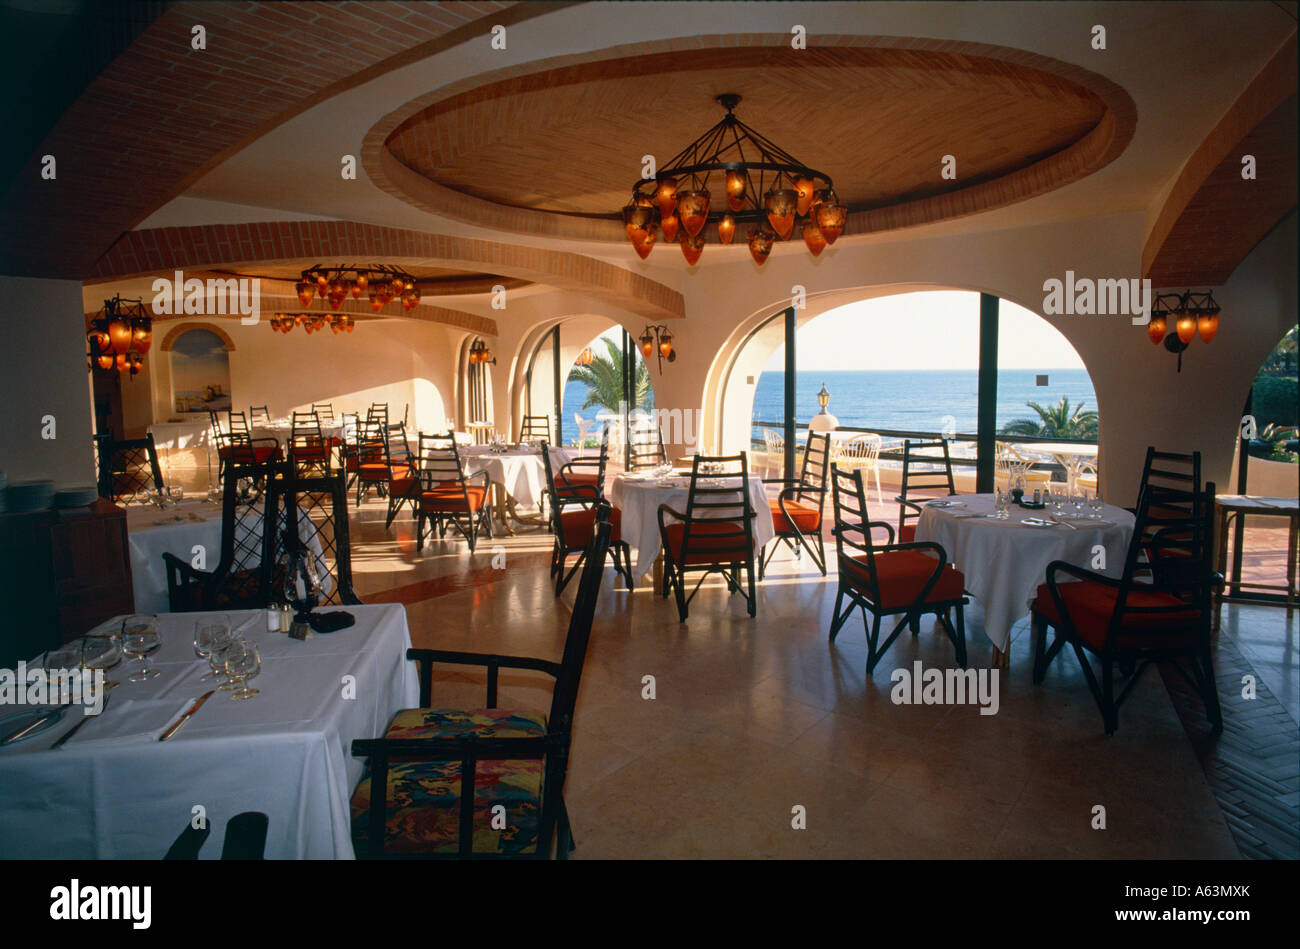 La sala da pranzo dell'hotel Sofitel Thalassa vilalara resort di Armacao de Pera regione di Algarve Portogallo Foto Stock